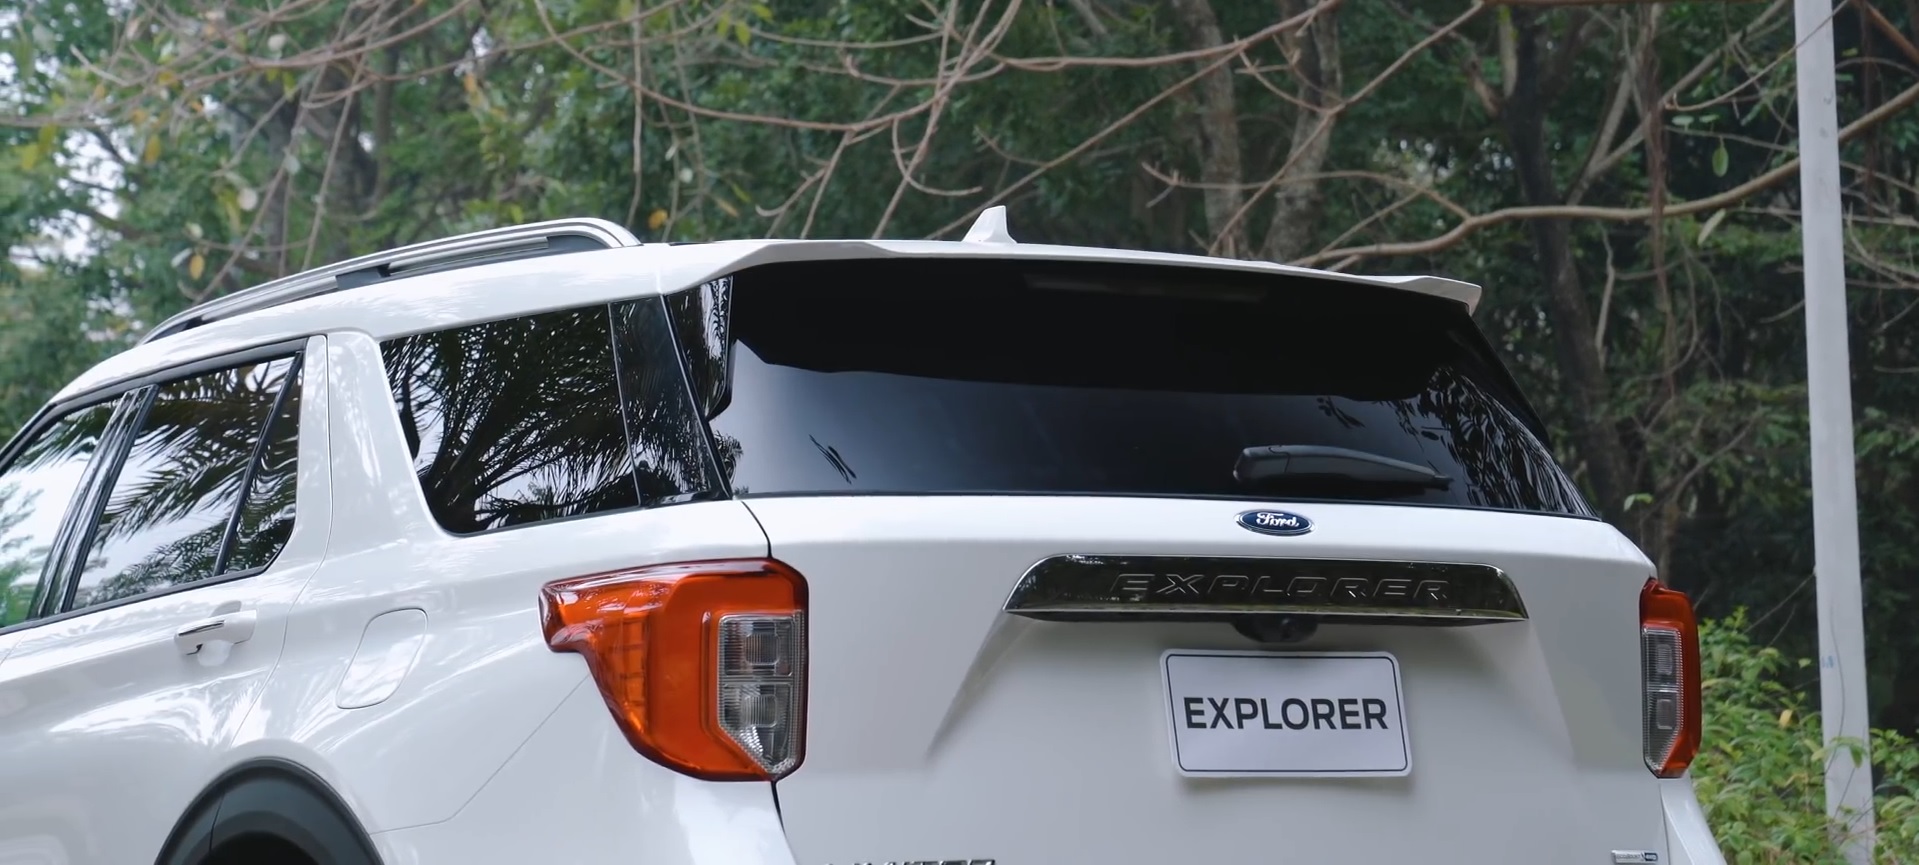 thanh giá nóc và đuôi cá ford explorer 2022 tại ford long biên